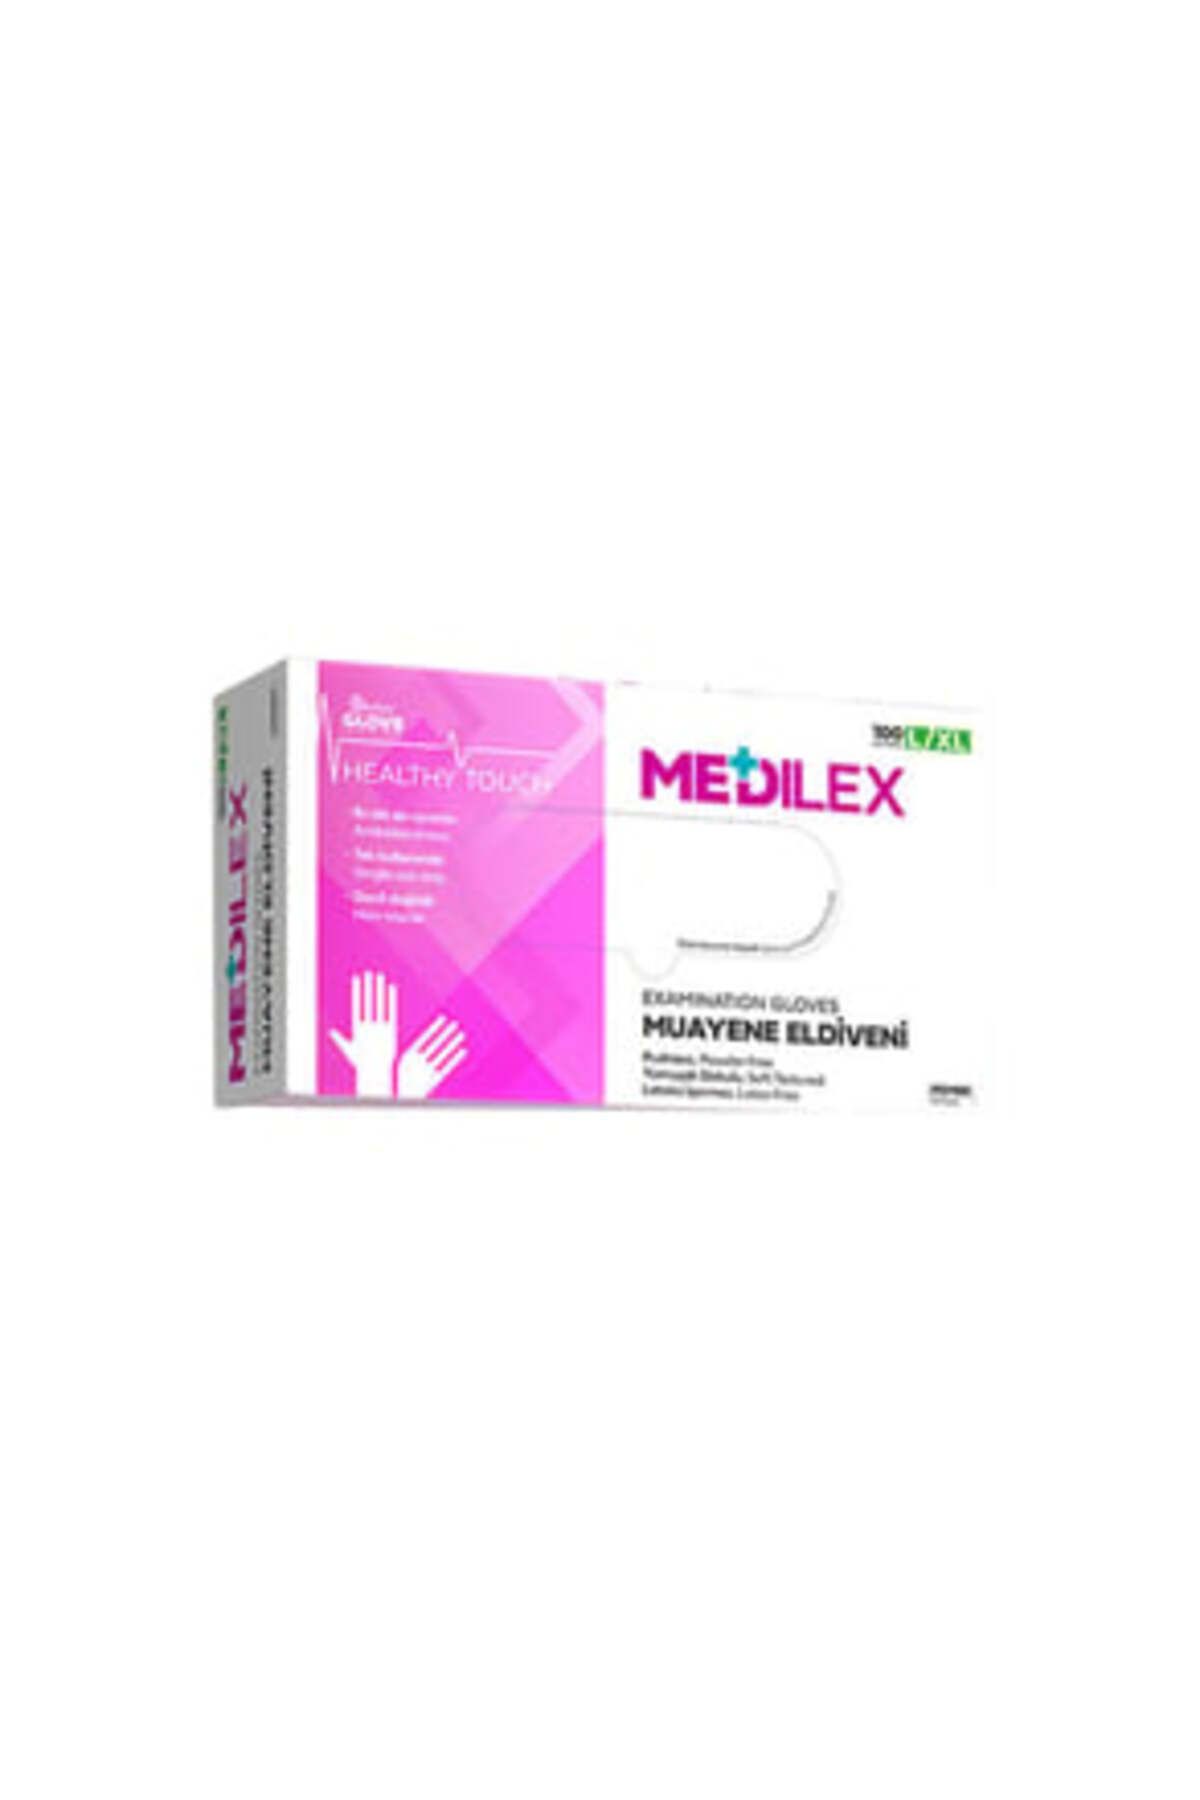 Reflex ( 1 ADET ) Reflex Medilex Pudrasız Muayene Eldiveni Pembe L-XL Beden 100'Lü Paket